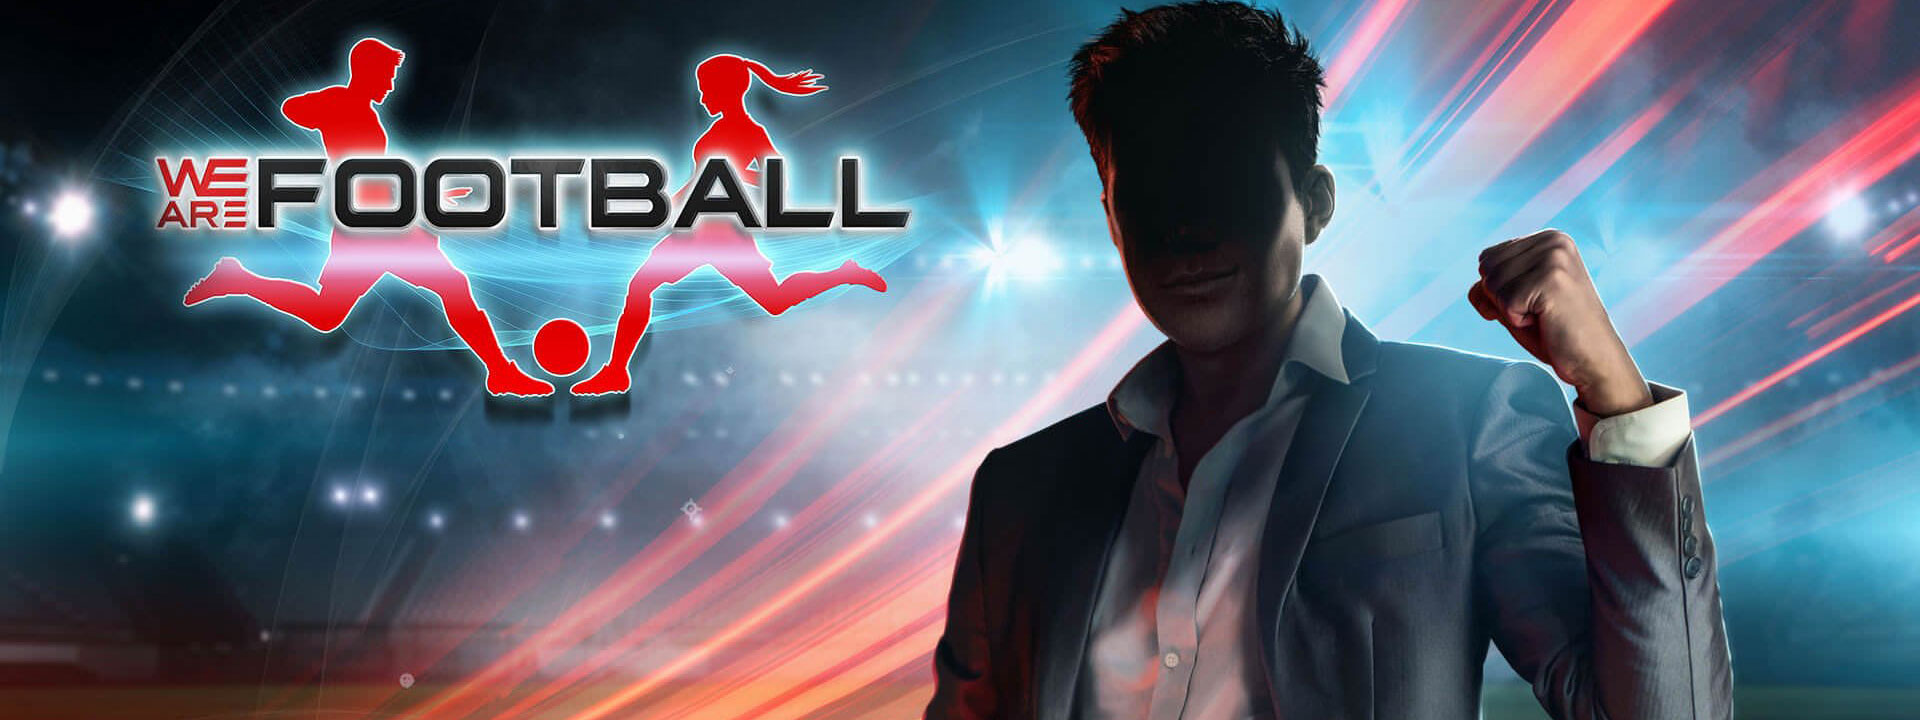 WE ARE FOOTBALL 12 - خرید بازی اورجینال We Are Football برای PC